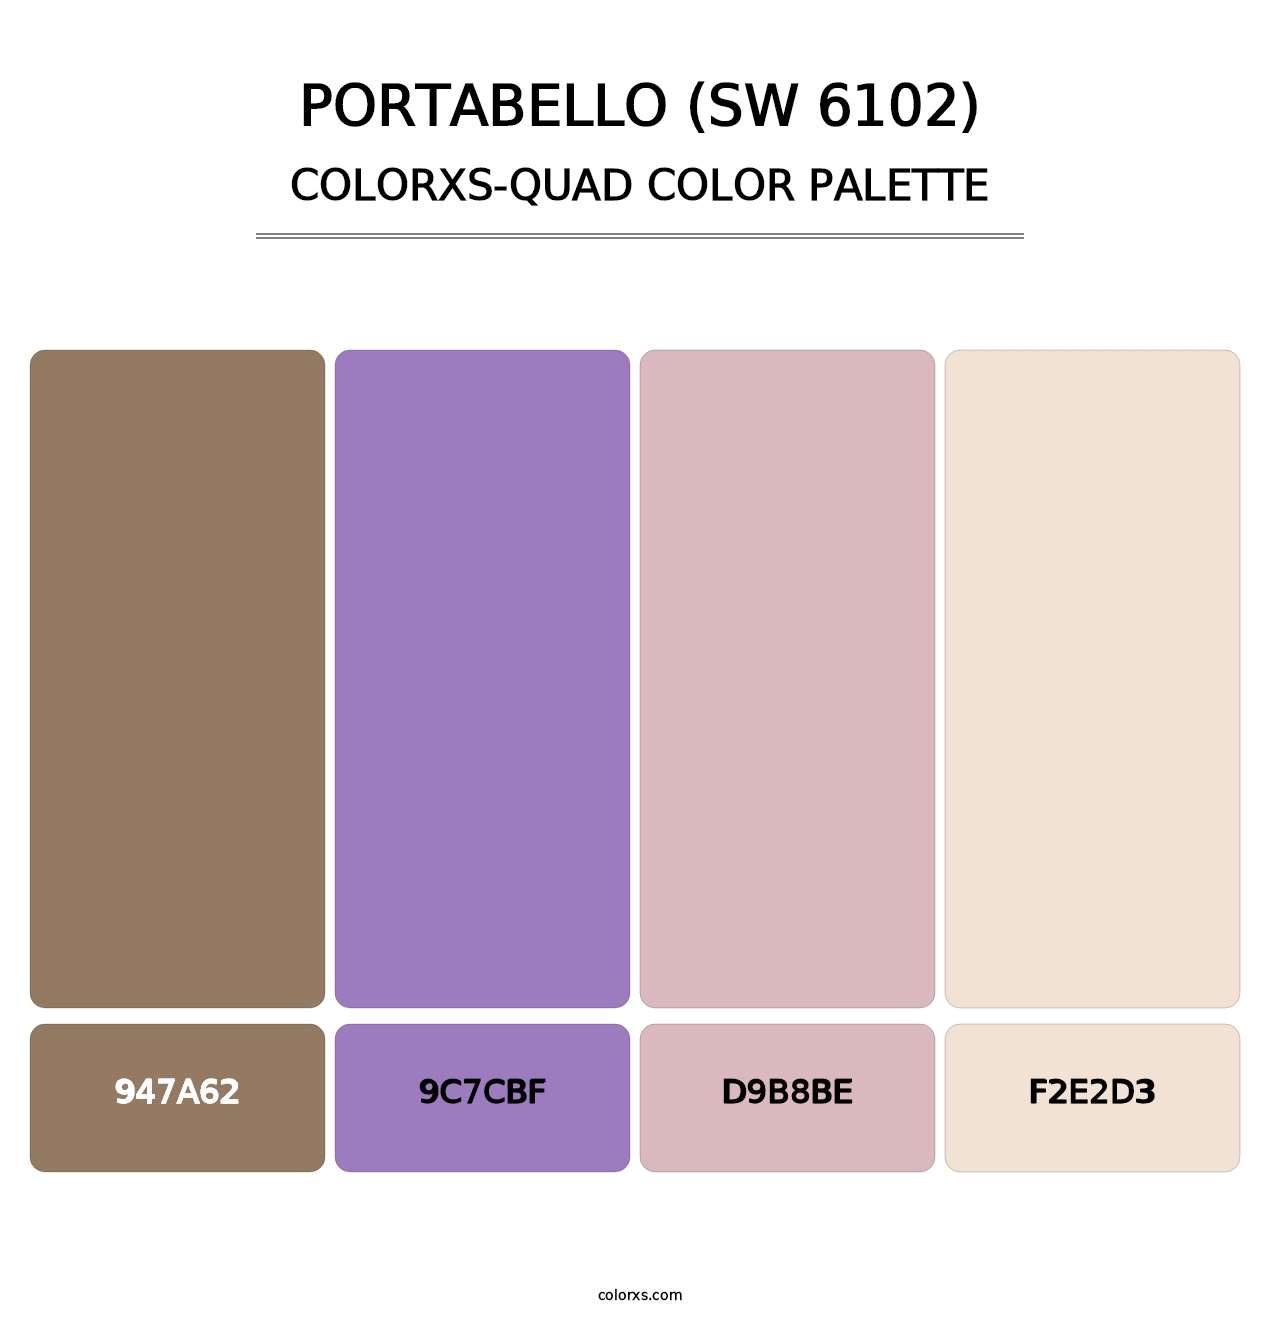 Portabello (SW 6102) - Colorxs Quad Palette